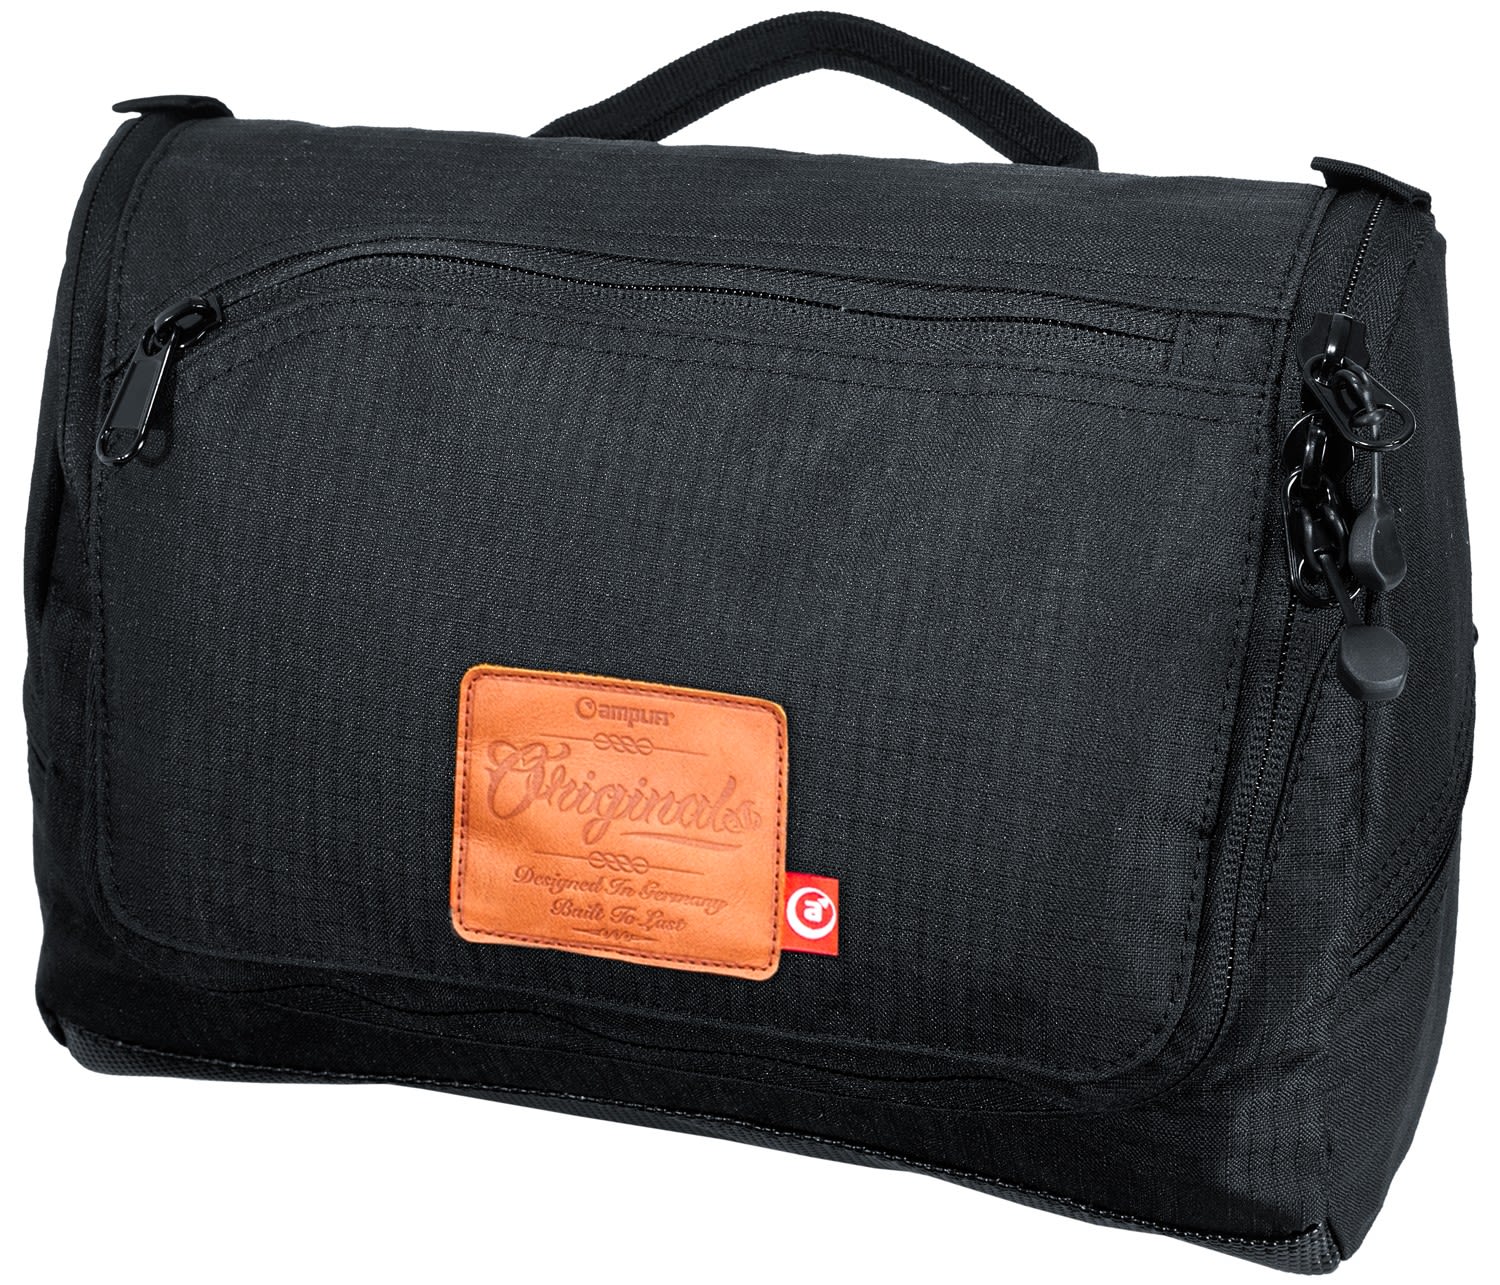 Amplifi Wash Pack Schwarz- Kulturtaschen- Grsse One Size - Farbe Black